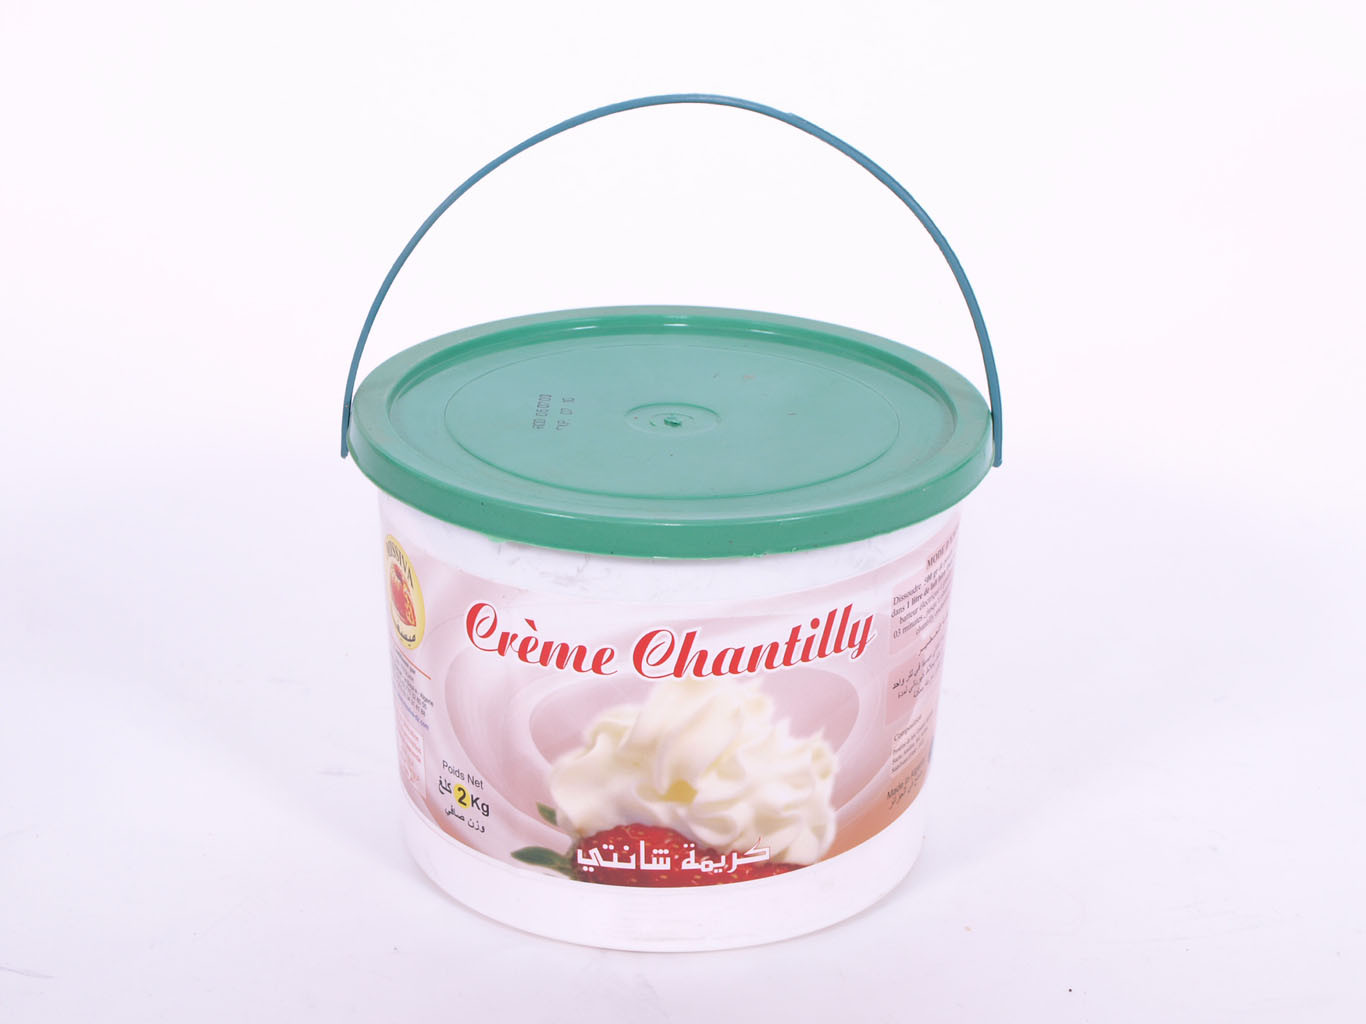 Crème Chantilly en poudre (crème fouettée)